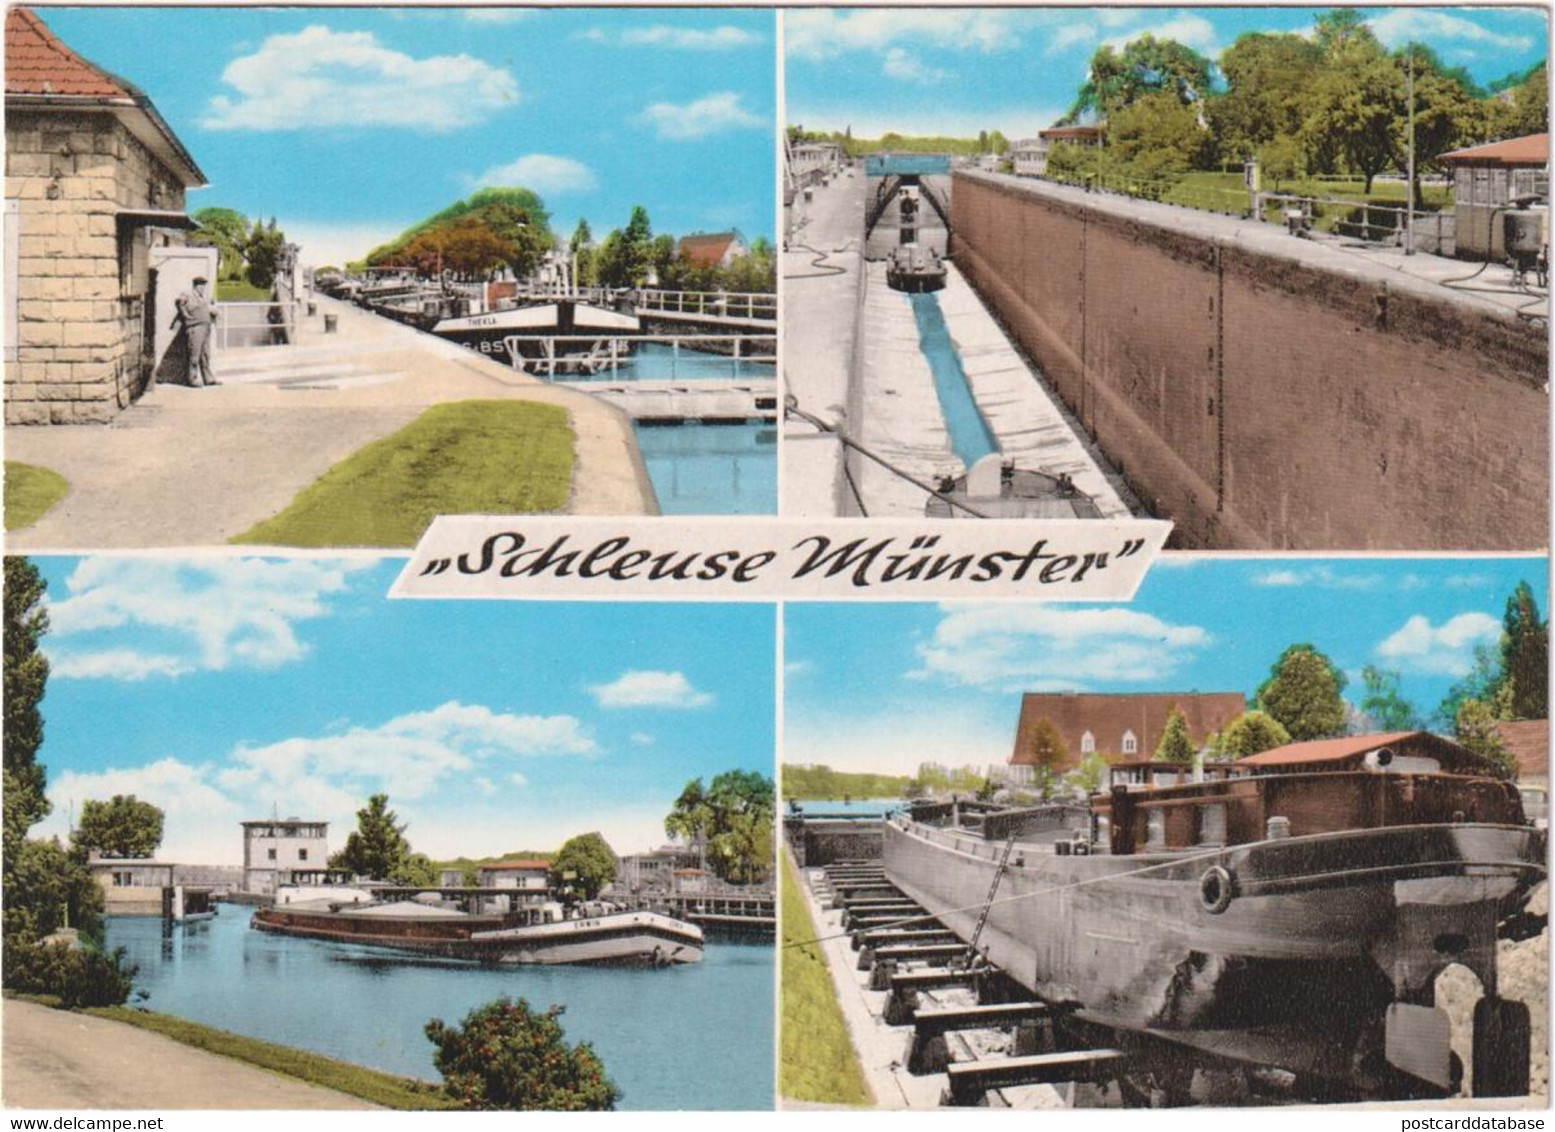 Schleuse Münster - & Boat - Munster